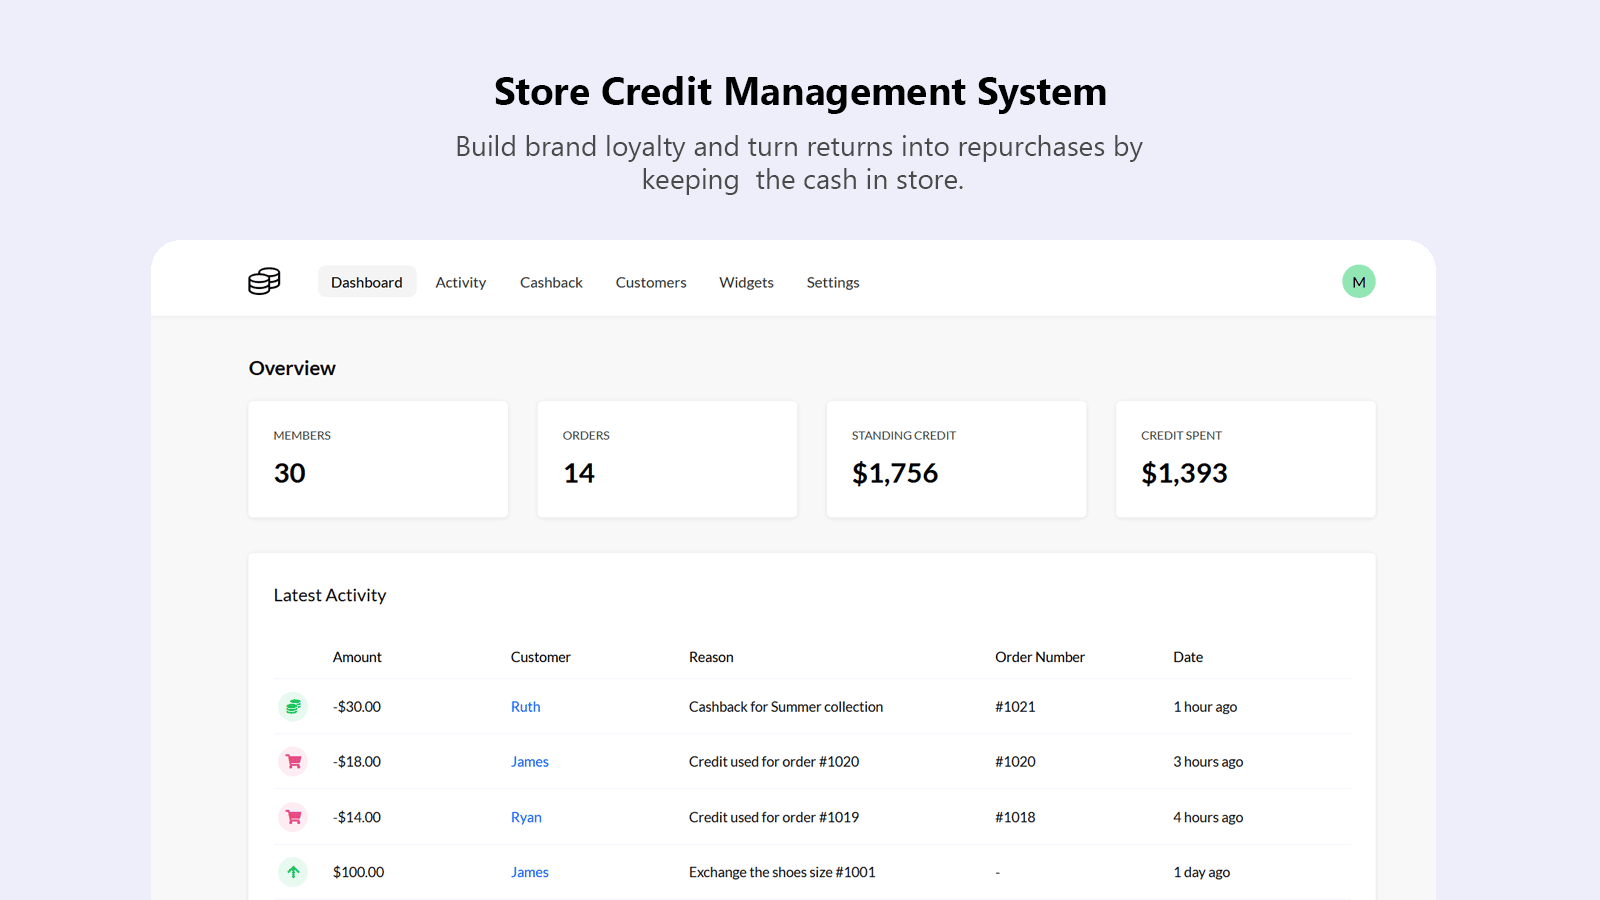 CreditsYard — Store Credit